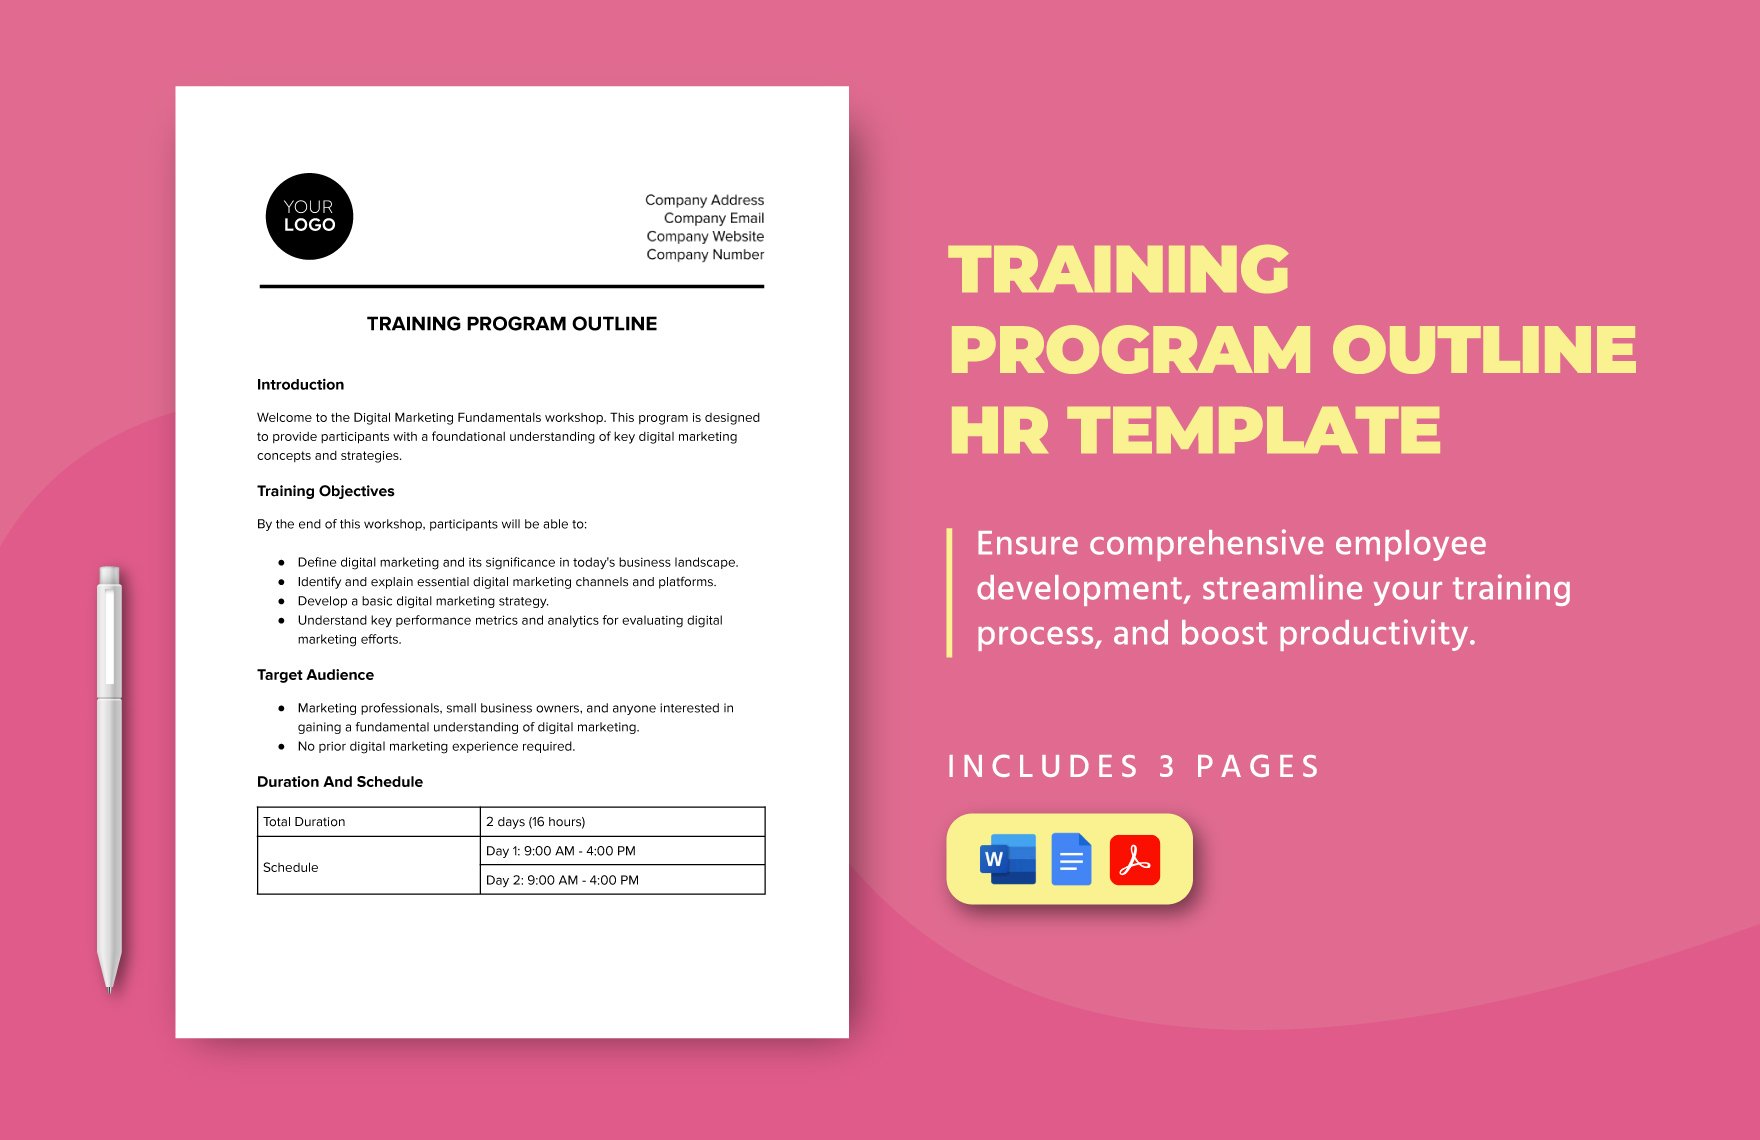 Training Program Outline HR Template